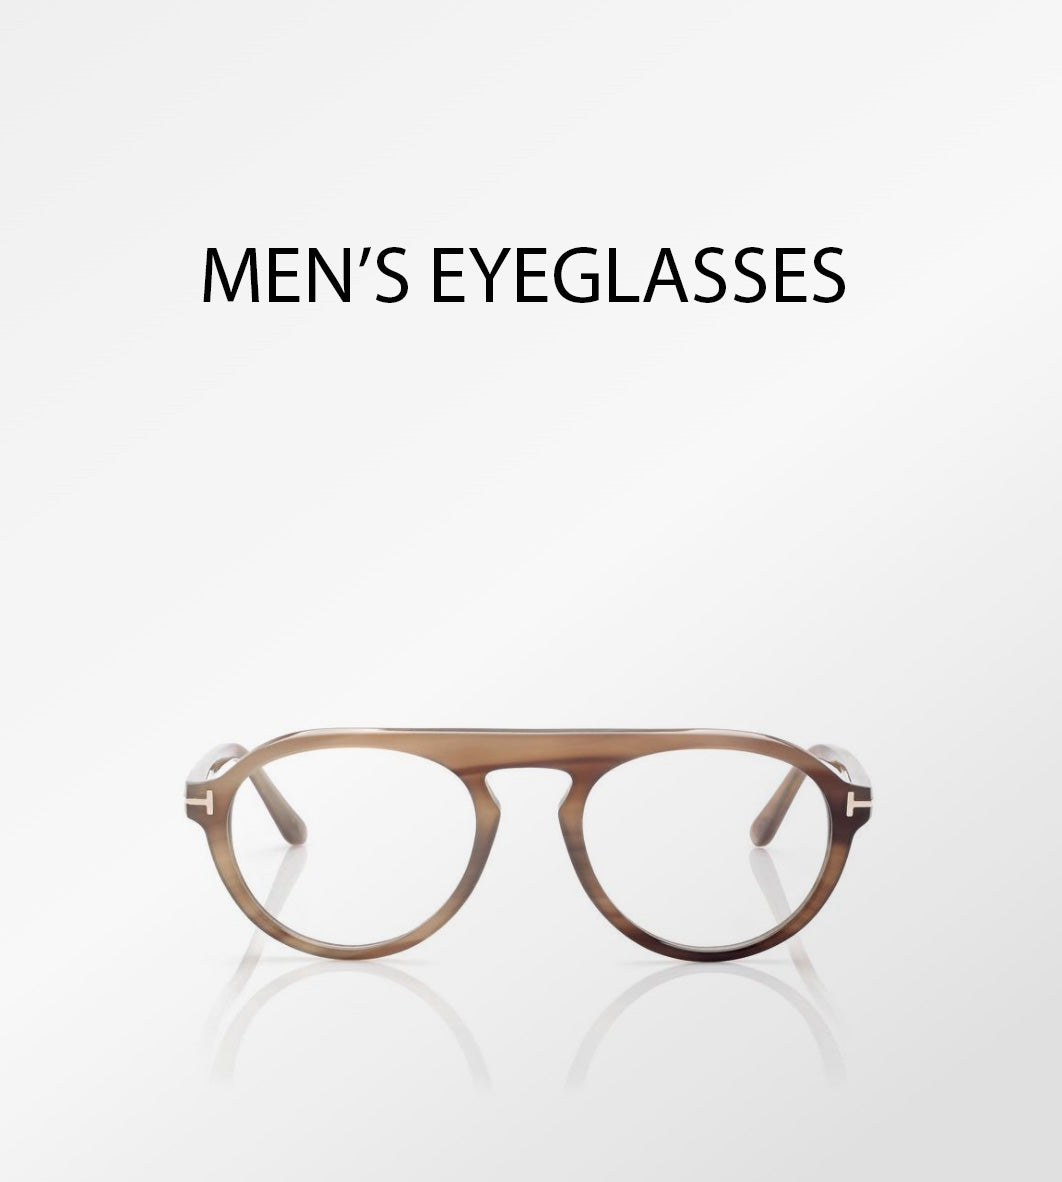 Tom Ford eyeglasses for men